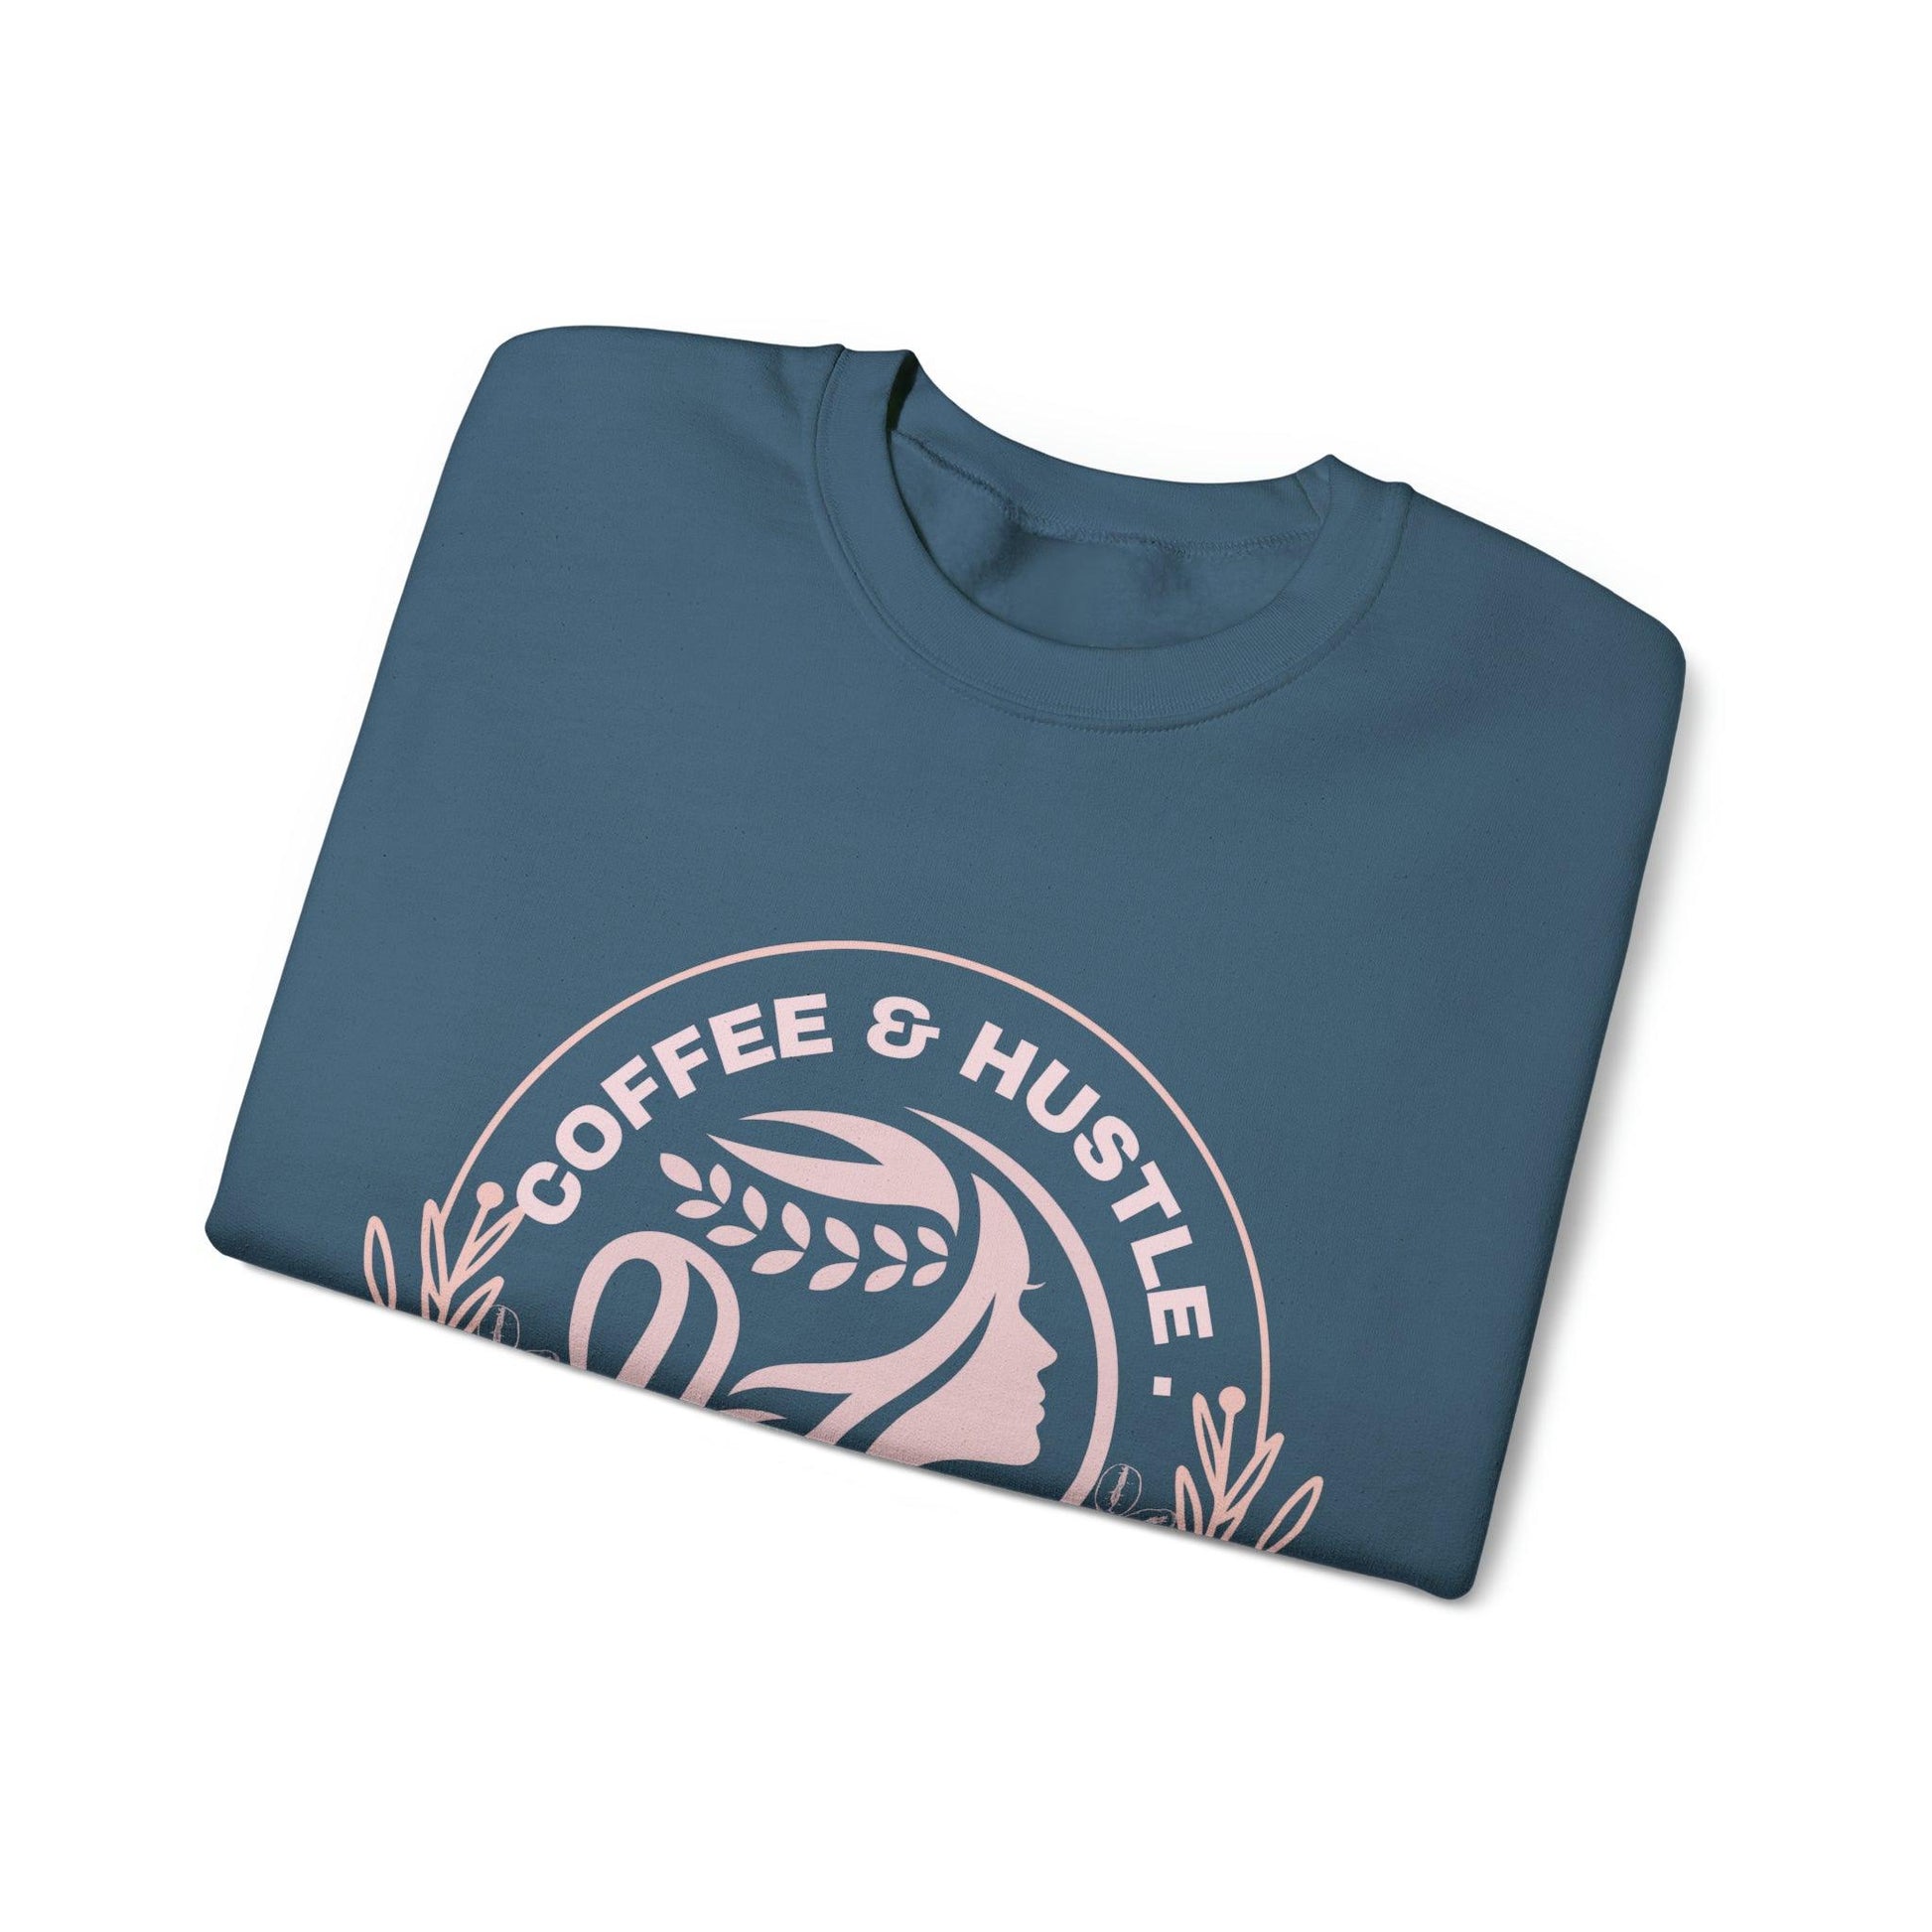 Coffeebre Unisex Crewneck Sweatshirt - COFFEEBRE